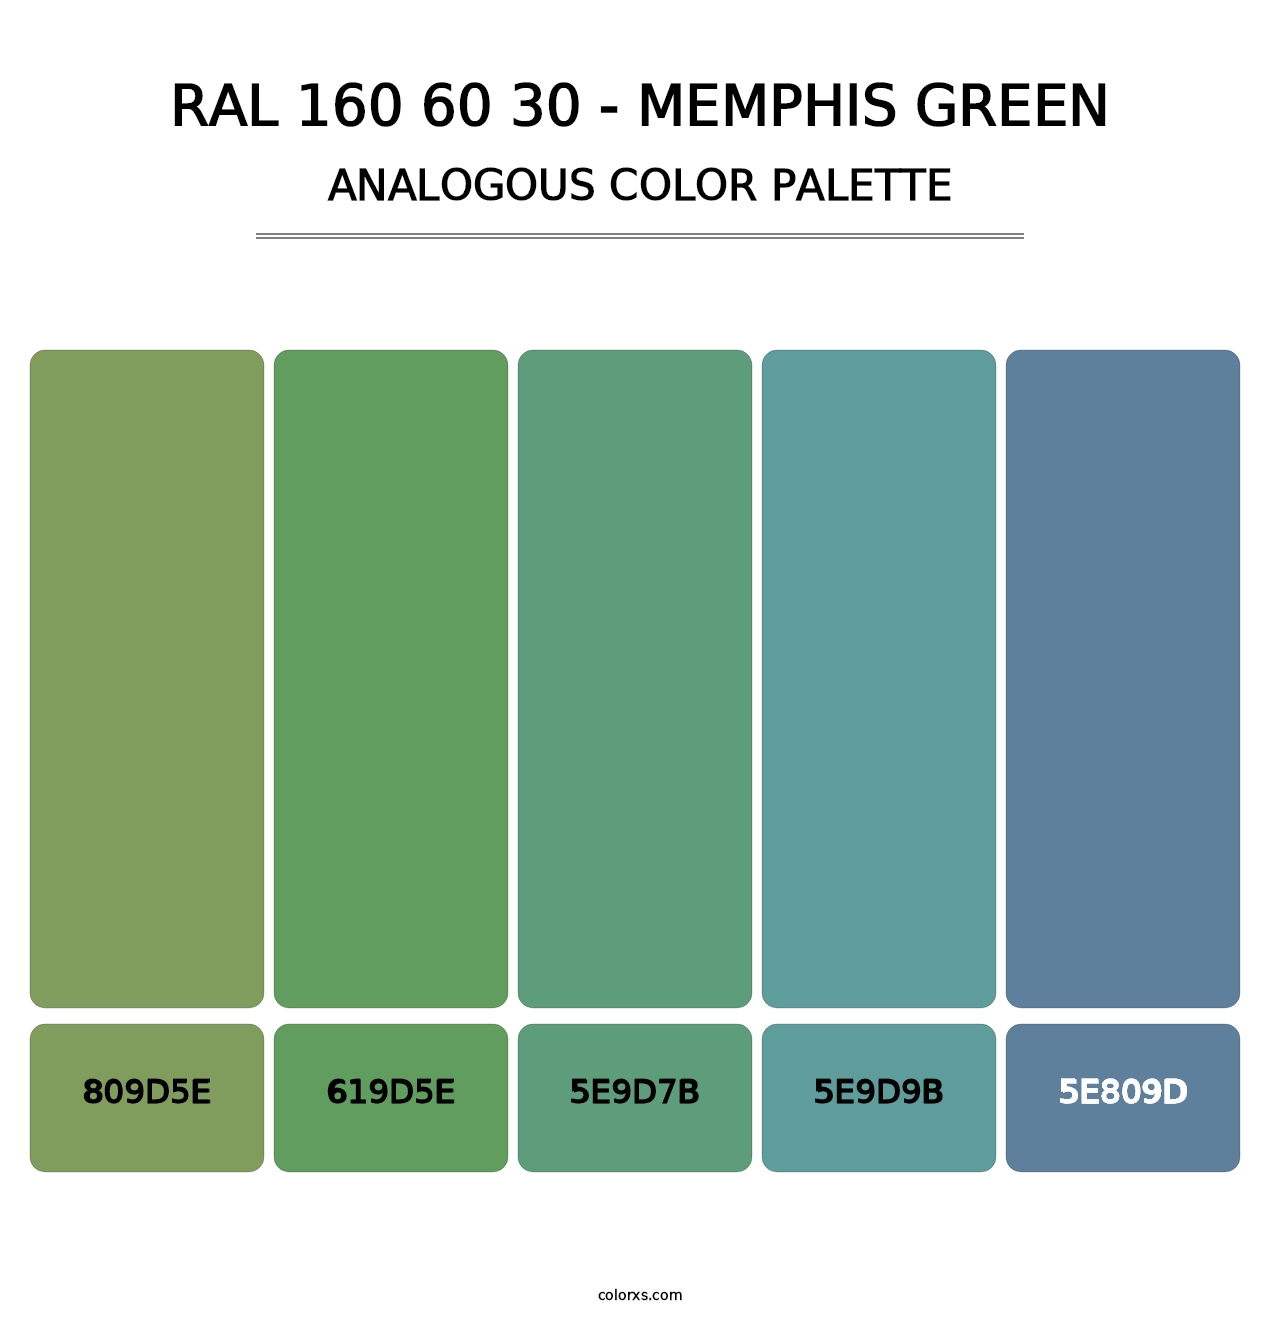 RAL 160 60 30 - Memphis Green - Analogous Color Palette